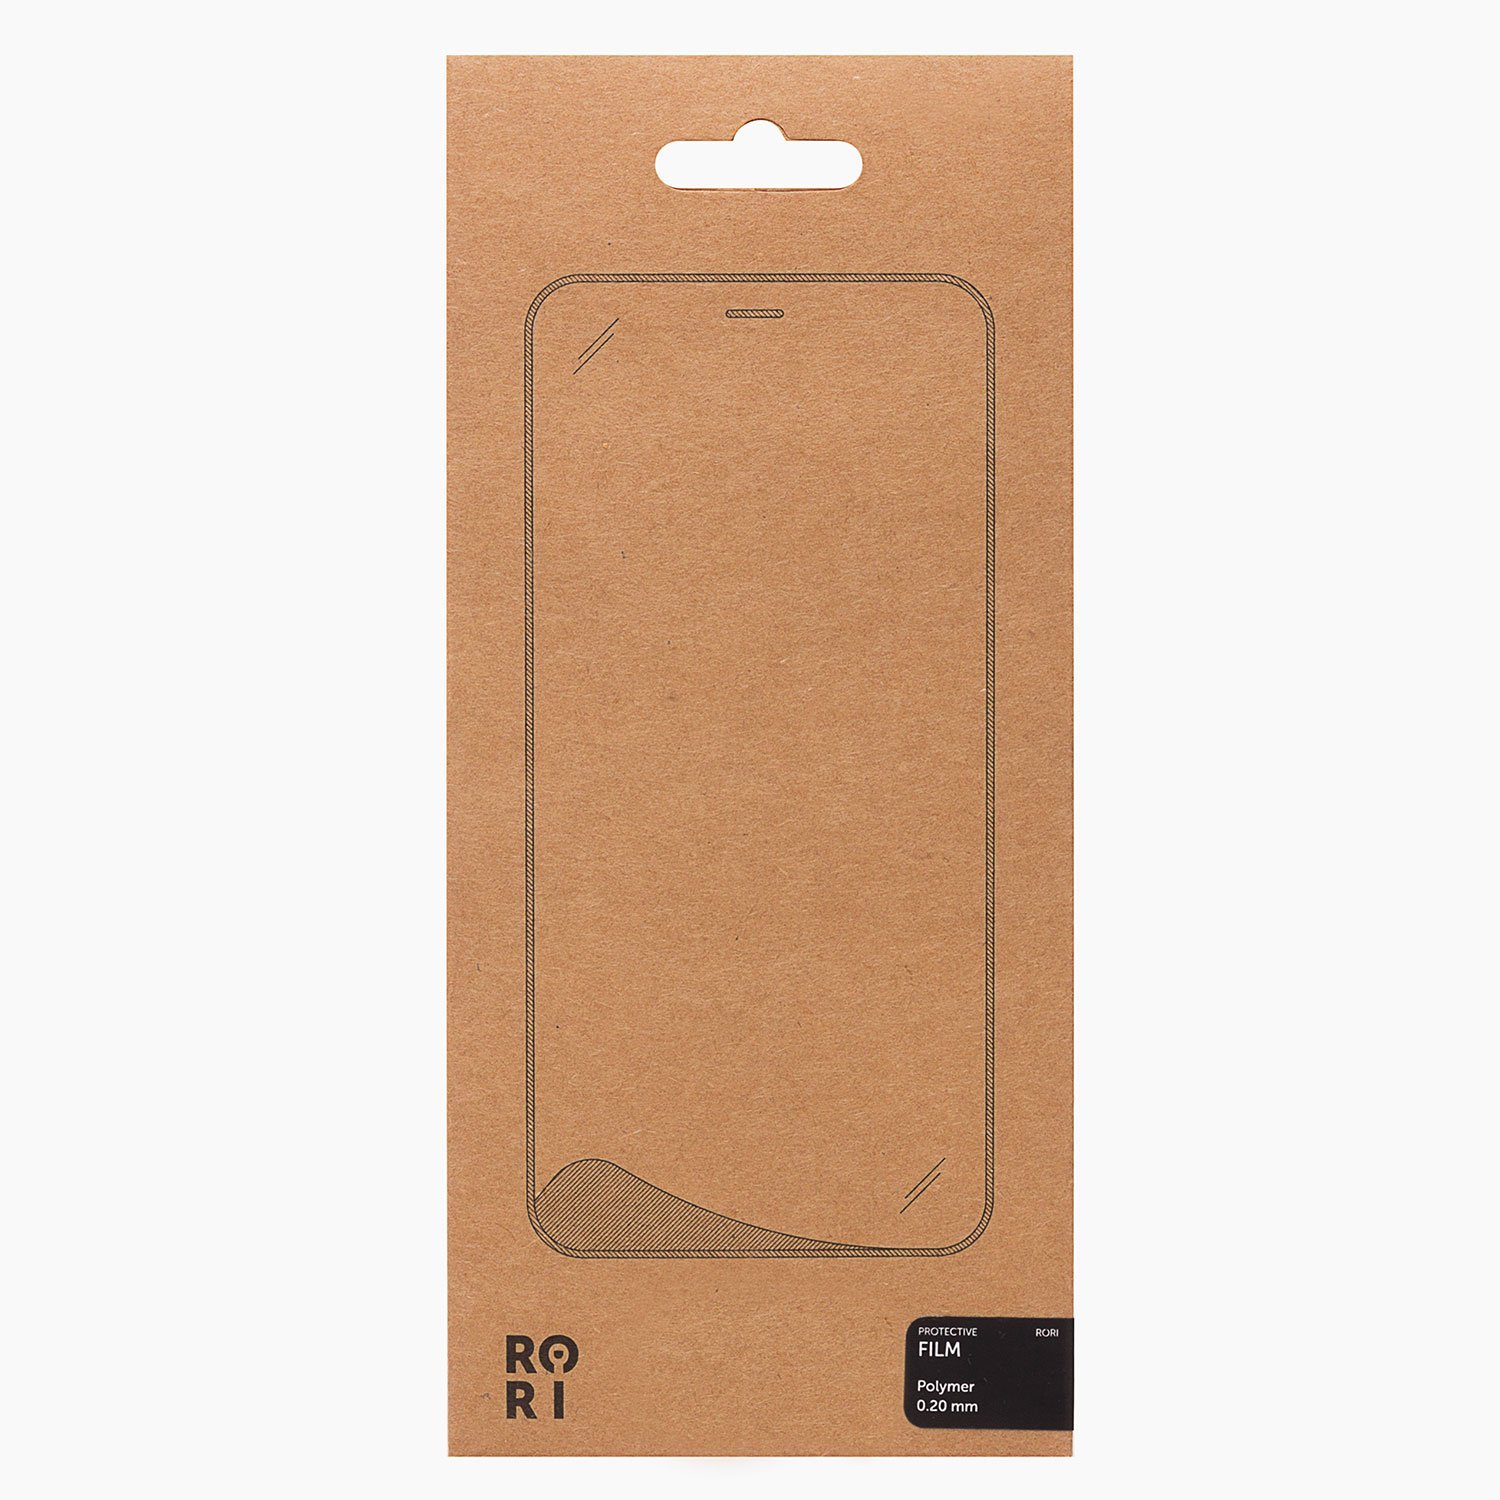 Защитная пленка Rori Polymer для экрана смартфона Xiaomi Redmi Note 8 Pro, поверхность матовая, черная рамка (125618)